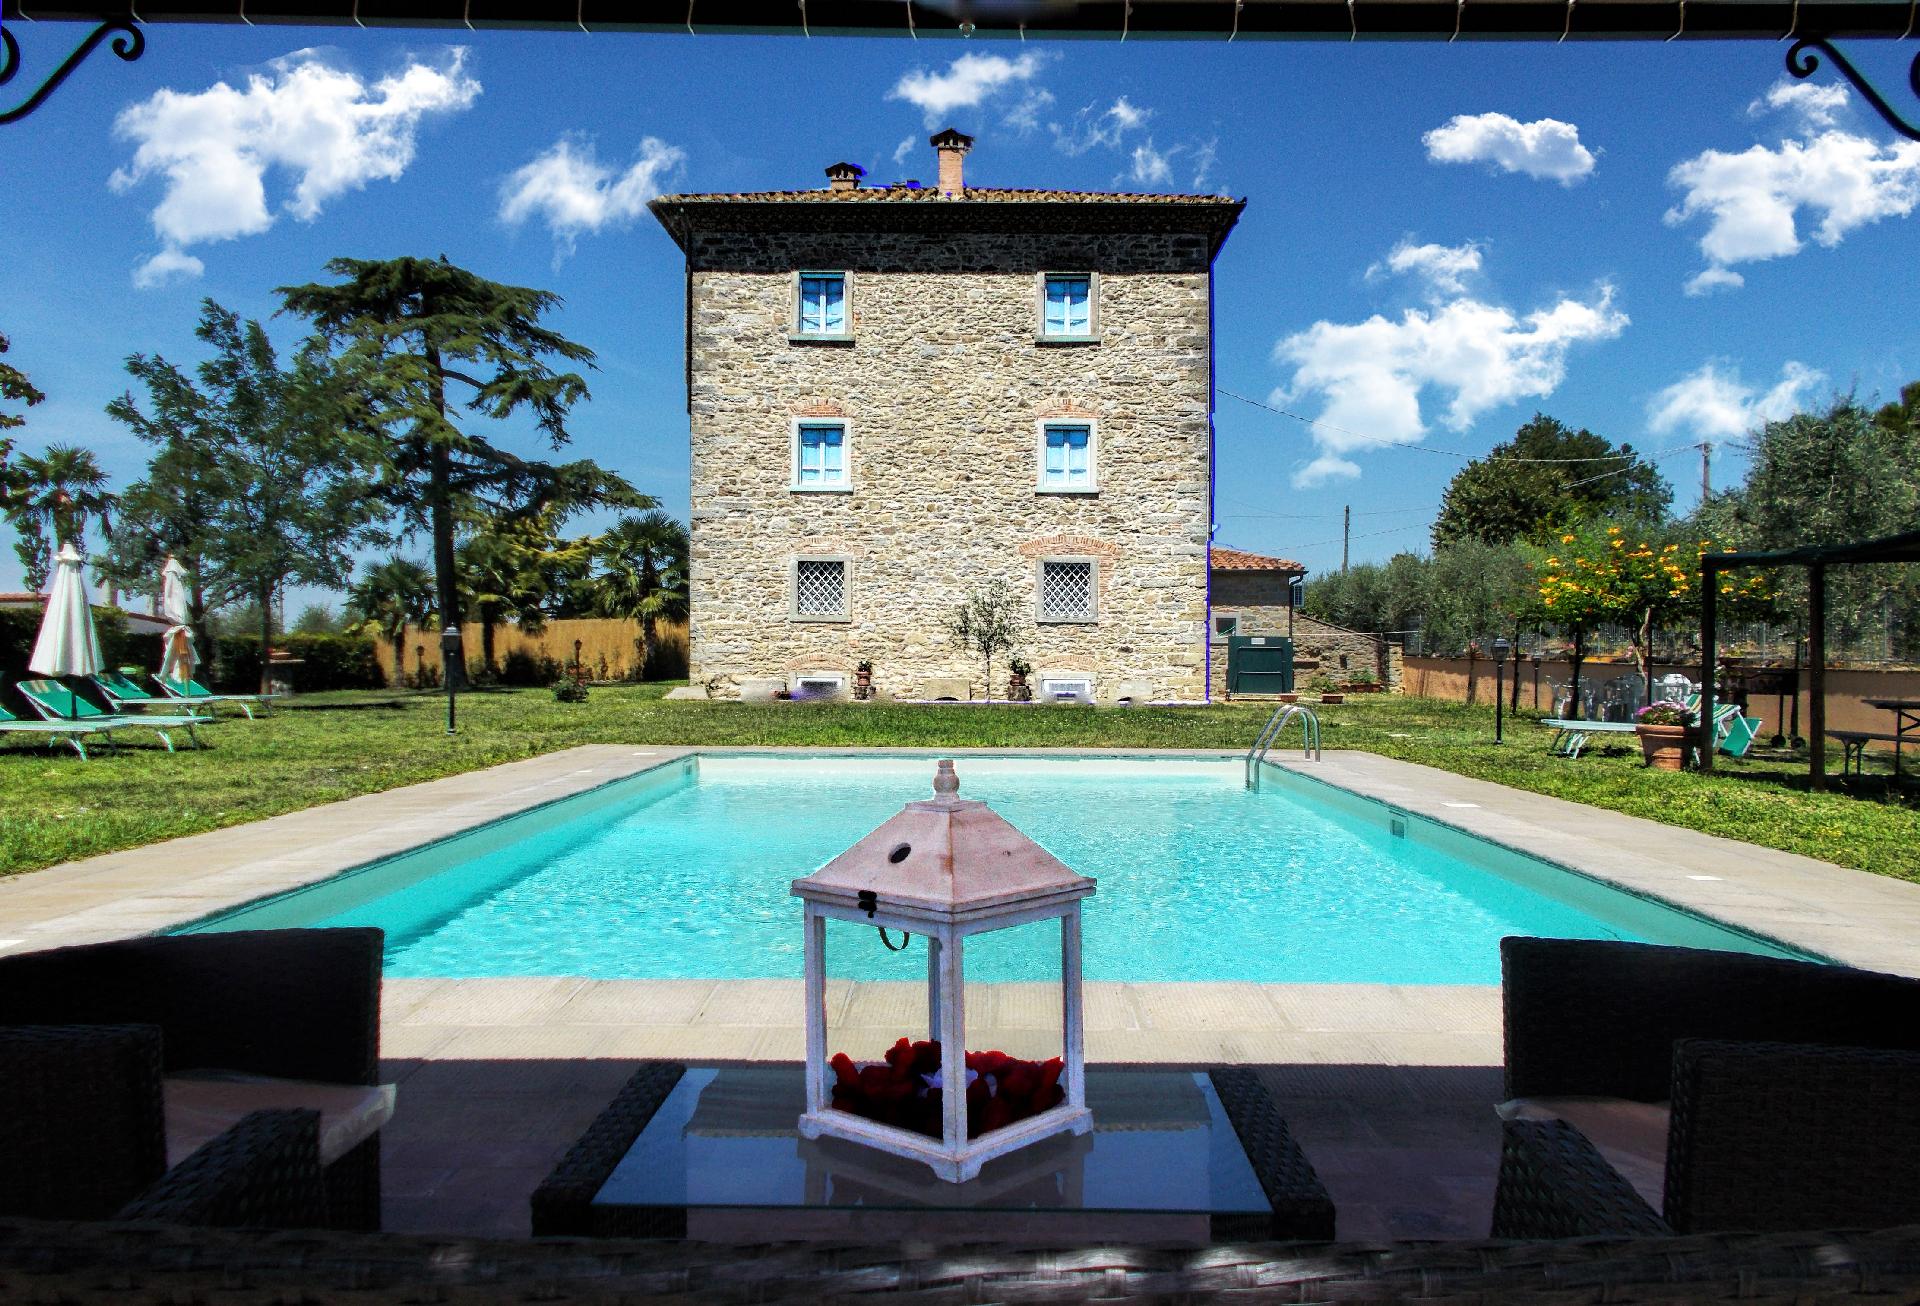 Ferienhaus mit Privatpool für 20 Personen ca. Bauernhof in Italien